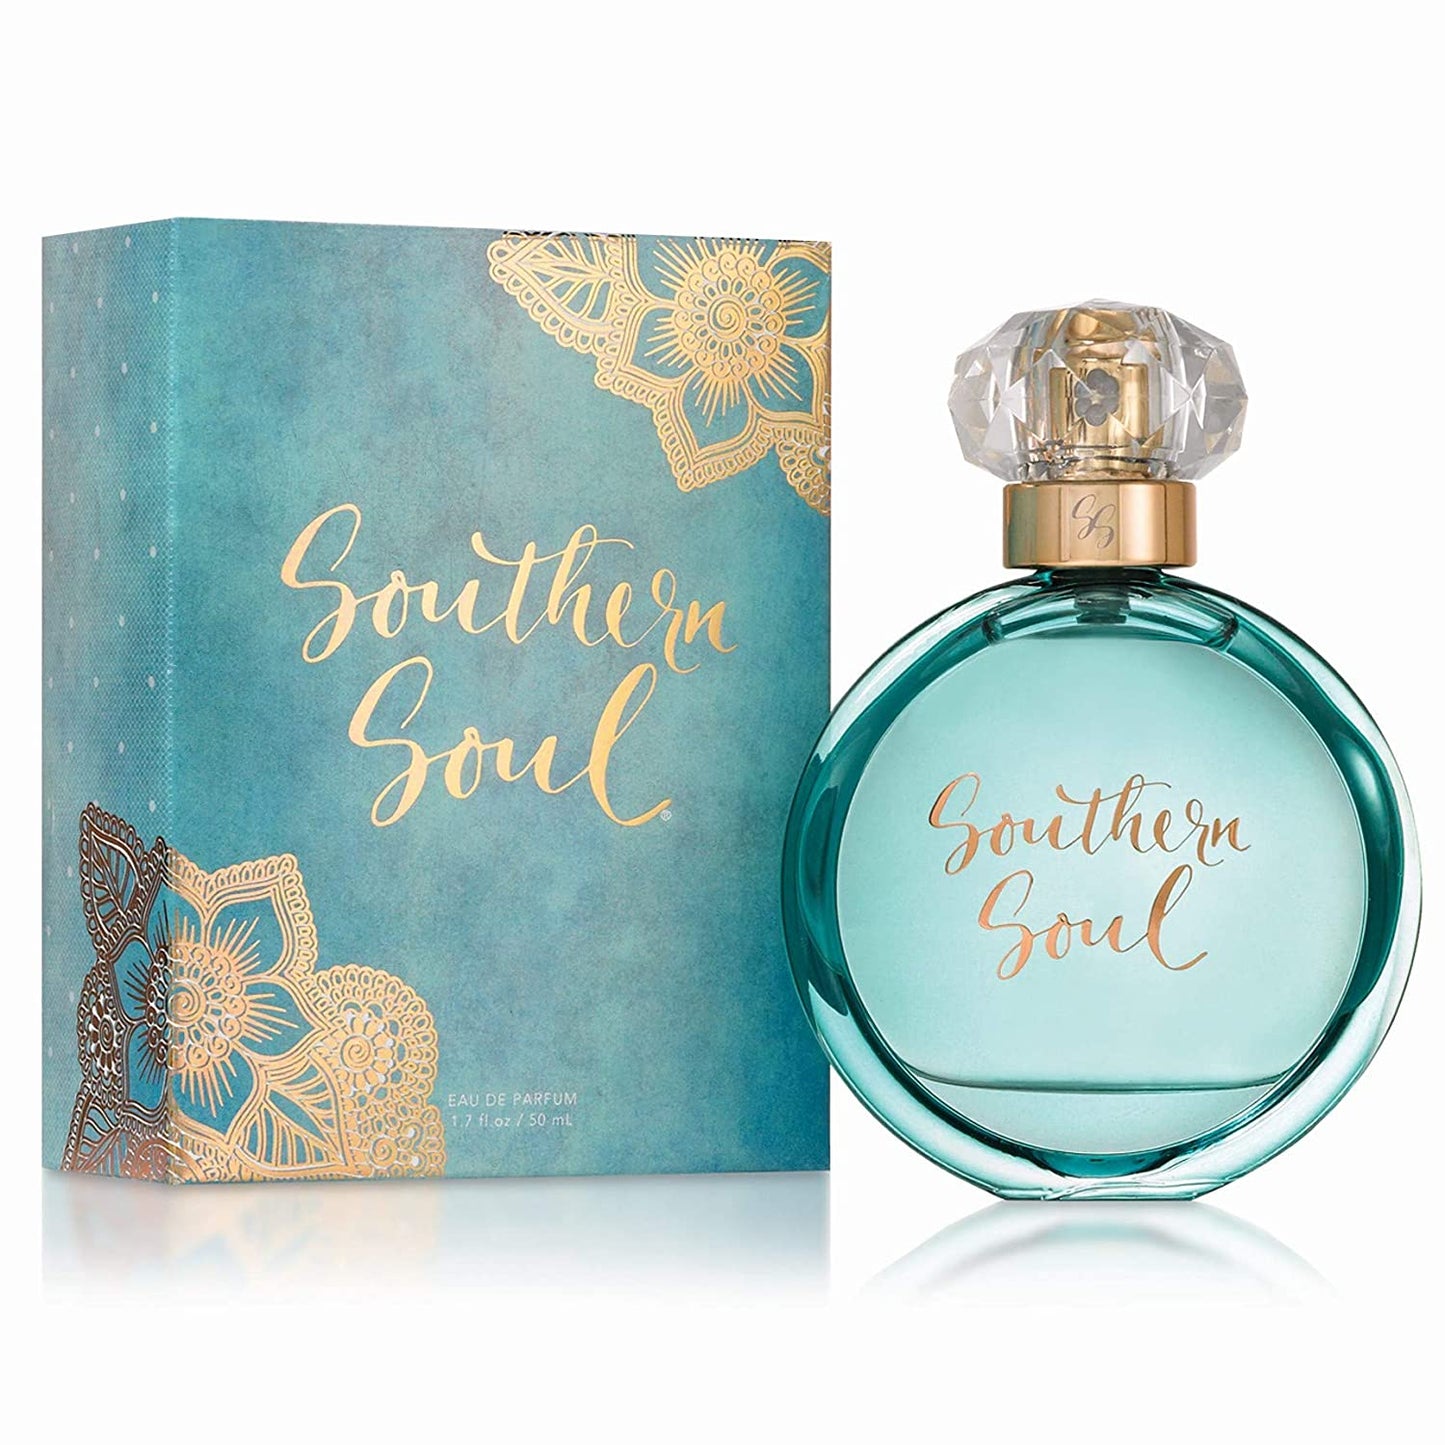 Tru Western - Women's Southern Soul Perfume